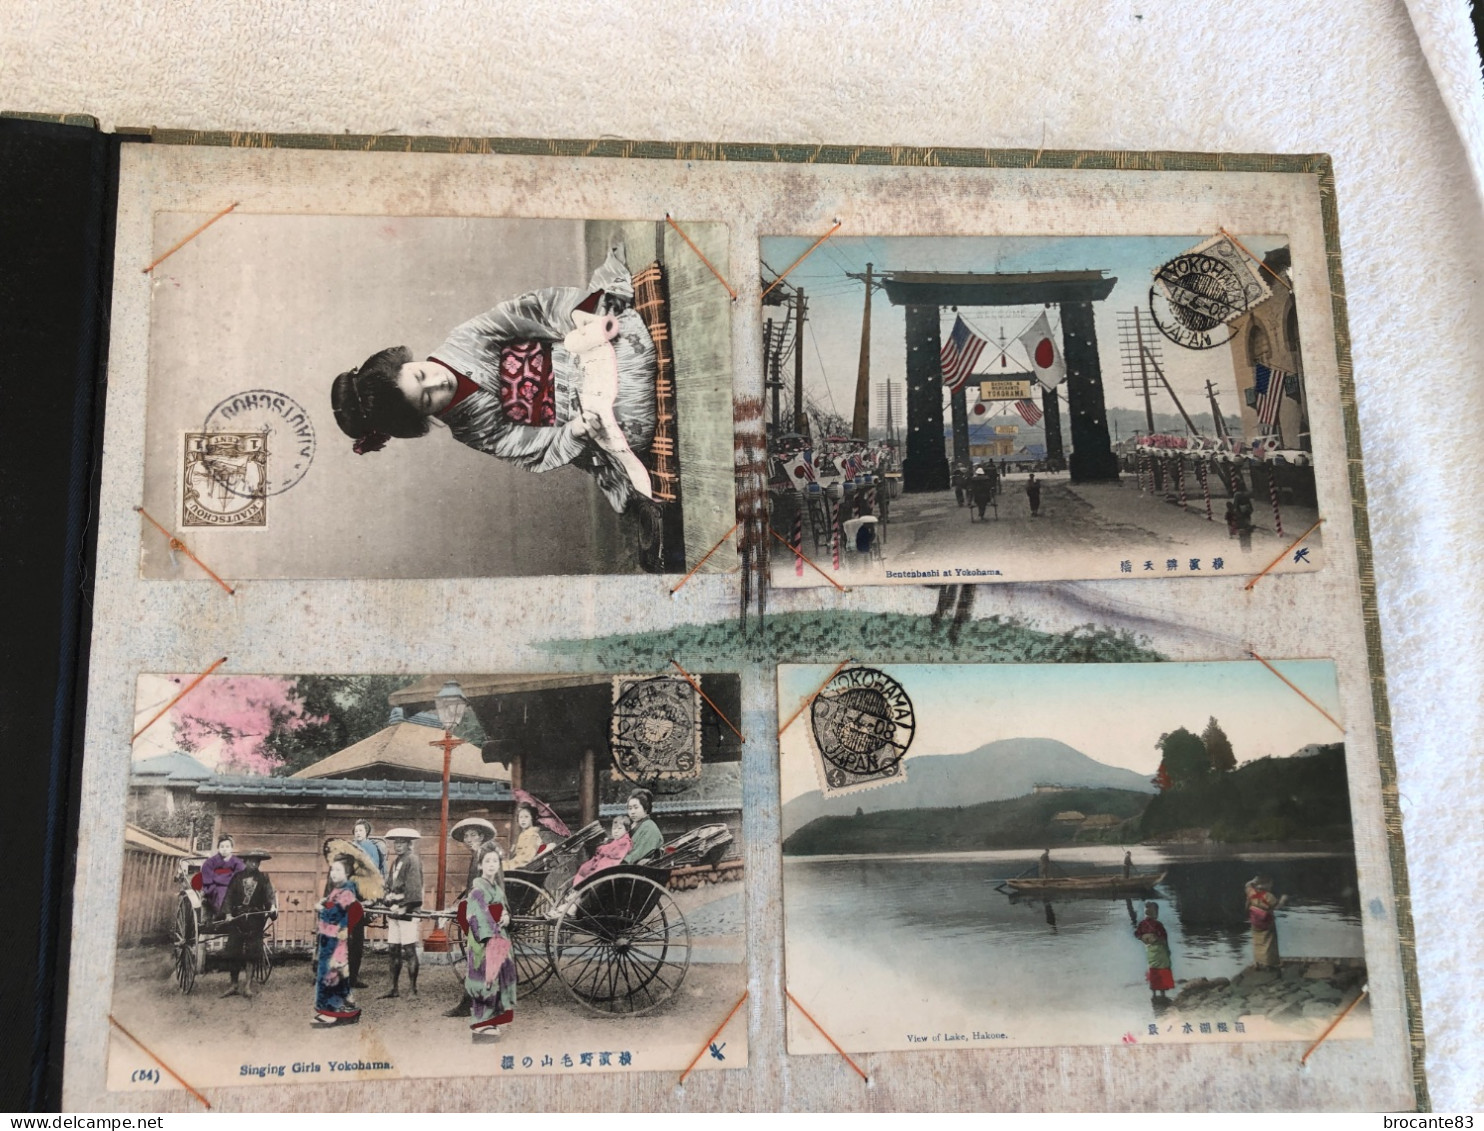 Album de 65 carte postale Asie Chine Japon  principalement adressé á la même personne